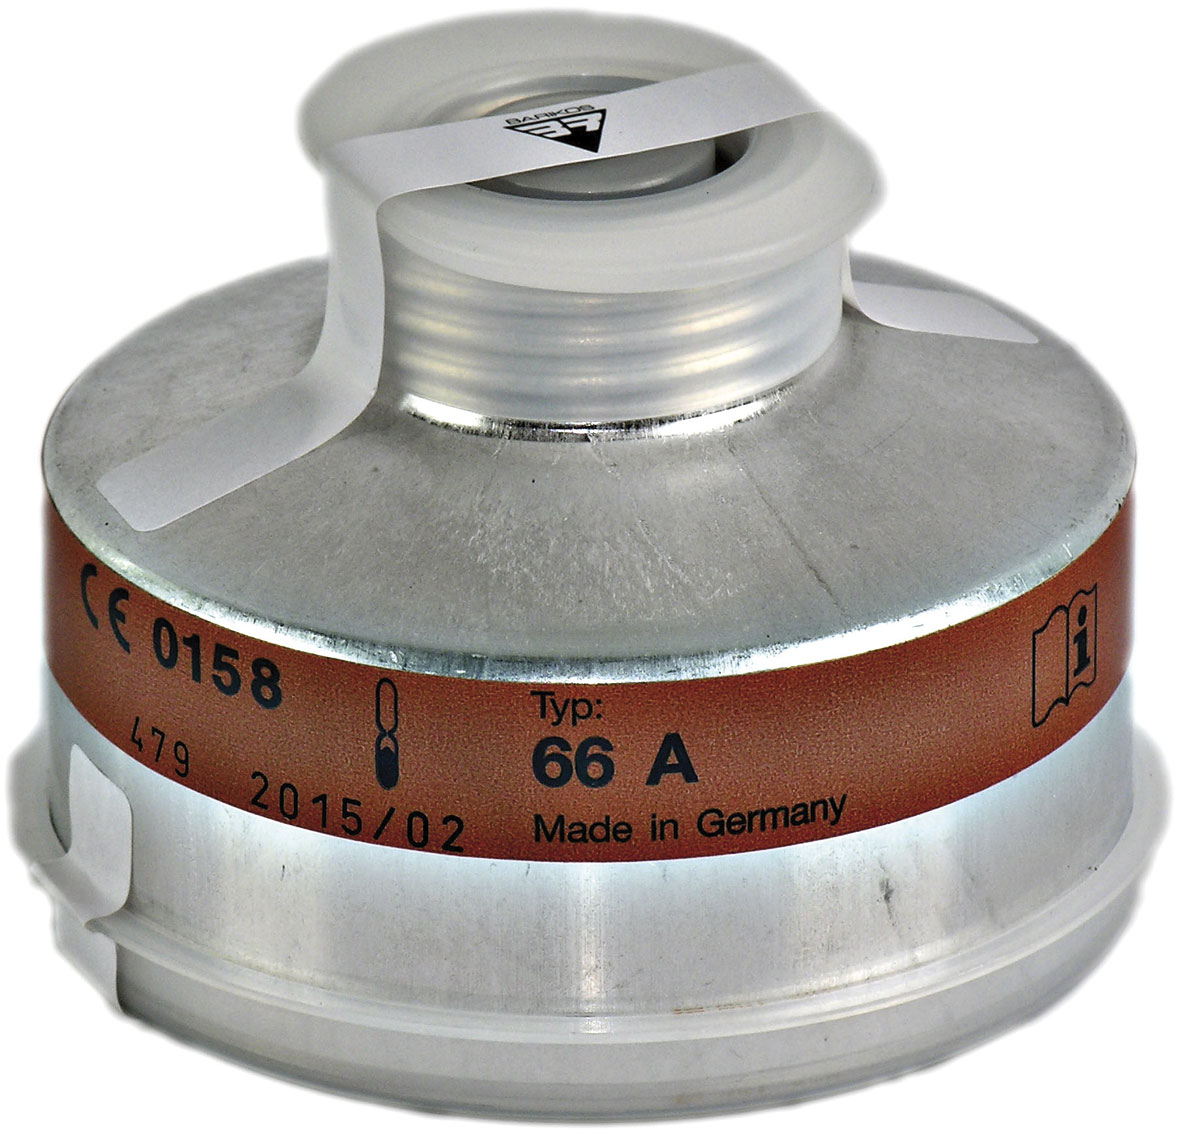 Filtro respiratorio rosca para gases inorgánicos. Clase protección: B2. BARIKOS